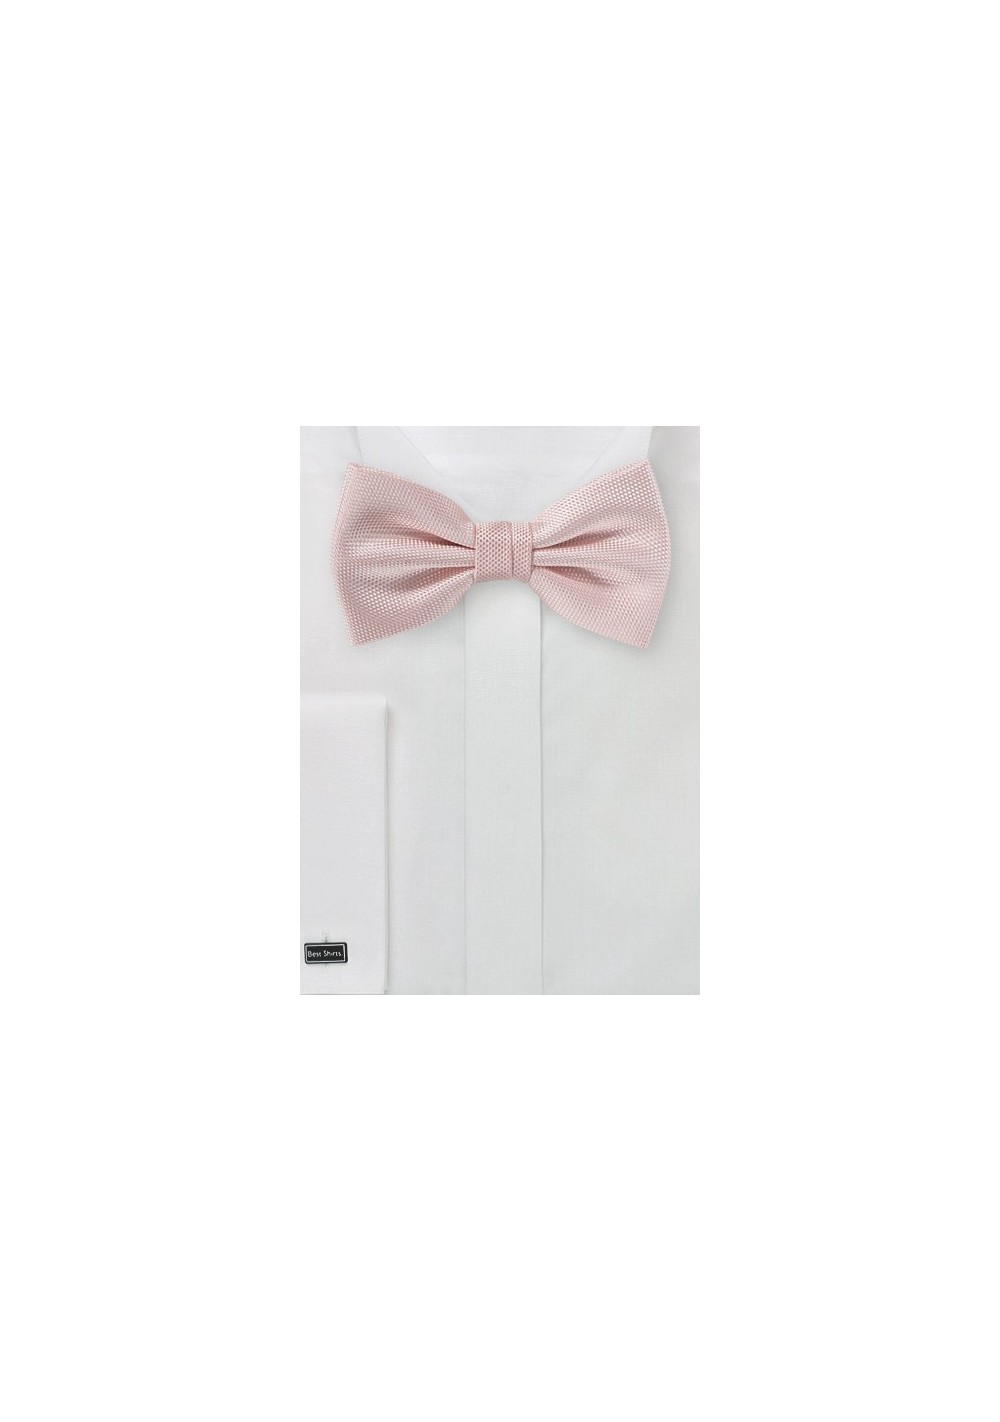 Textured Bow Tie in Peach Blush